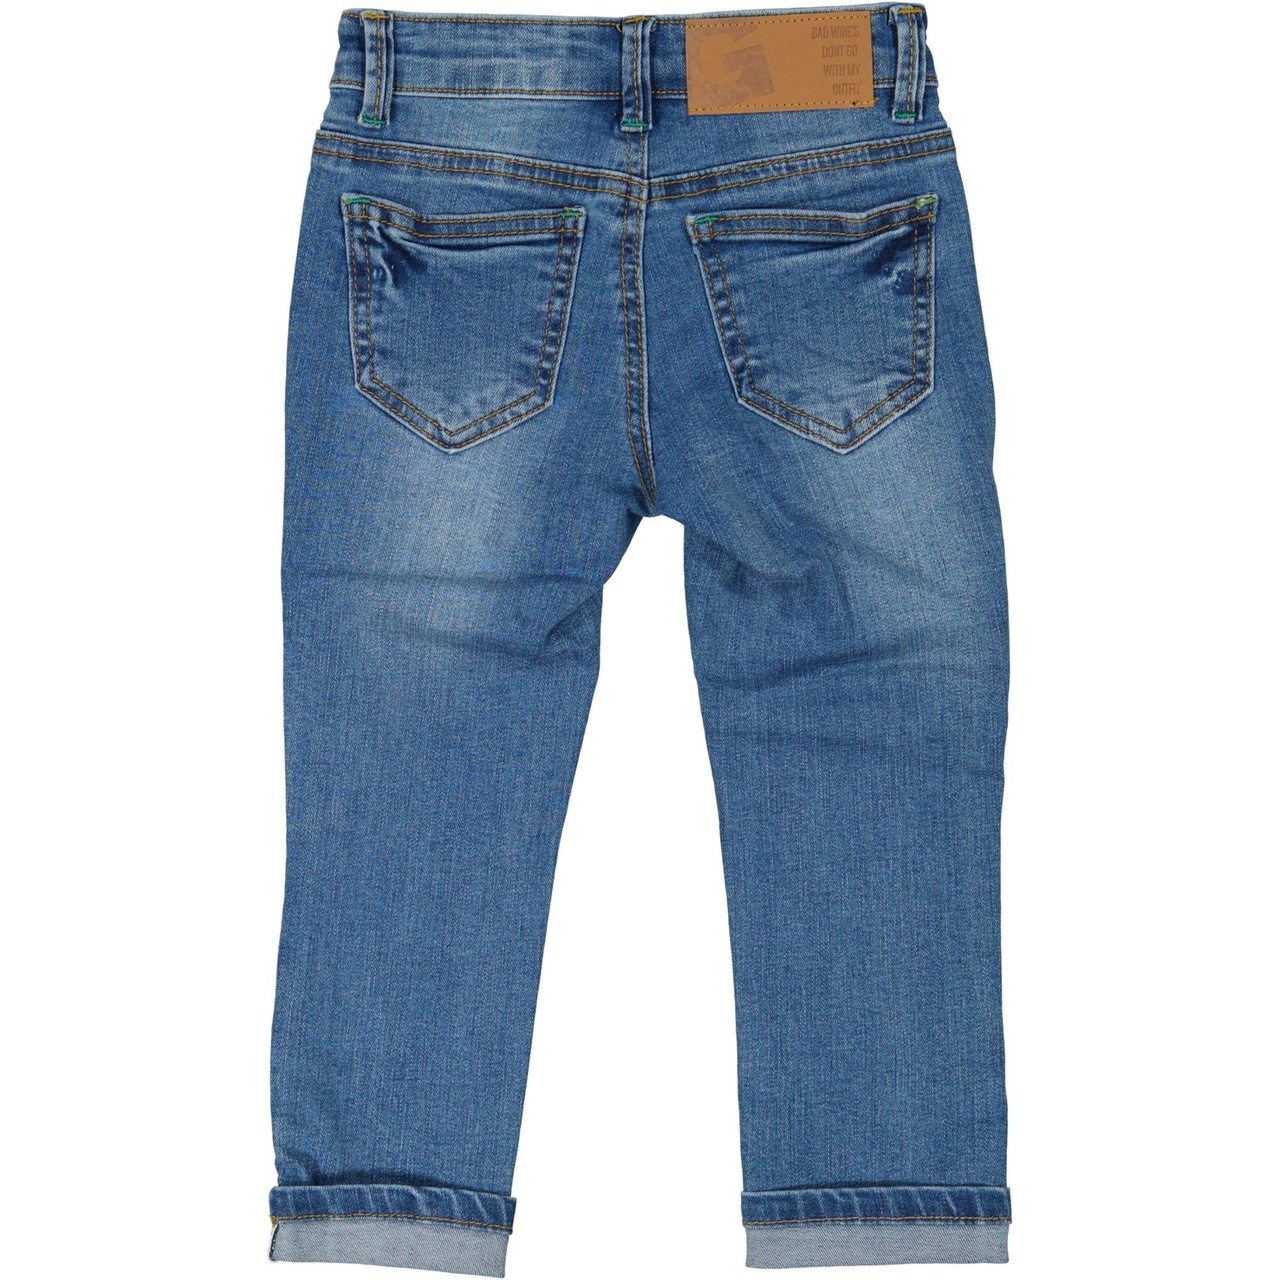 Unisex 5-pocket jeans Denim Sininen wash 86/92